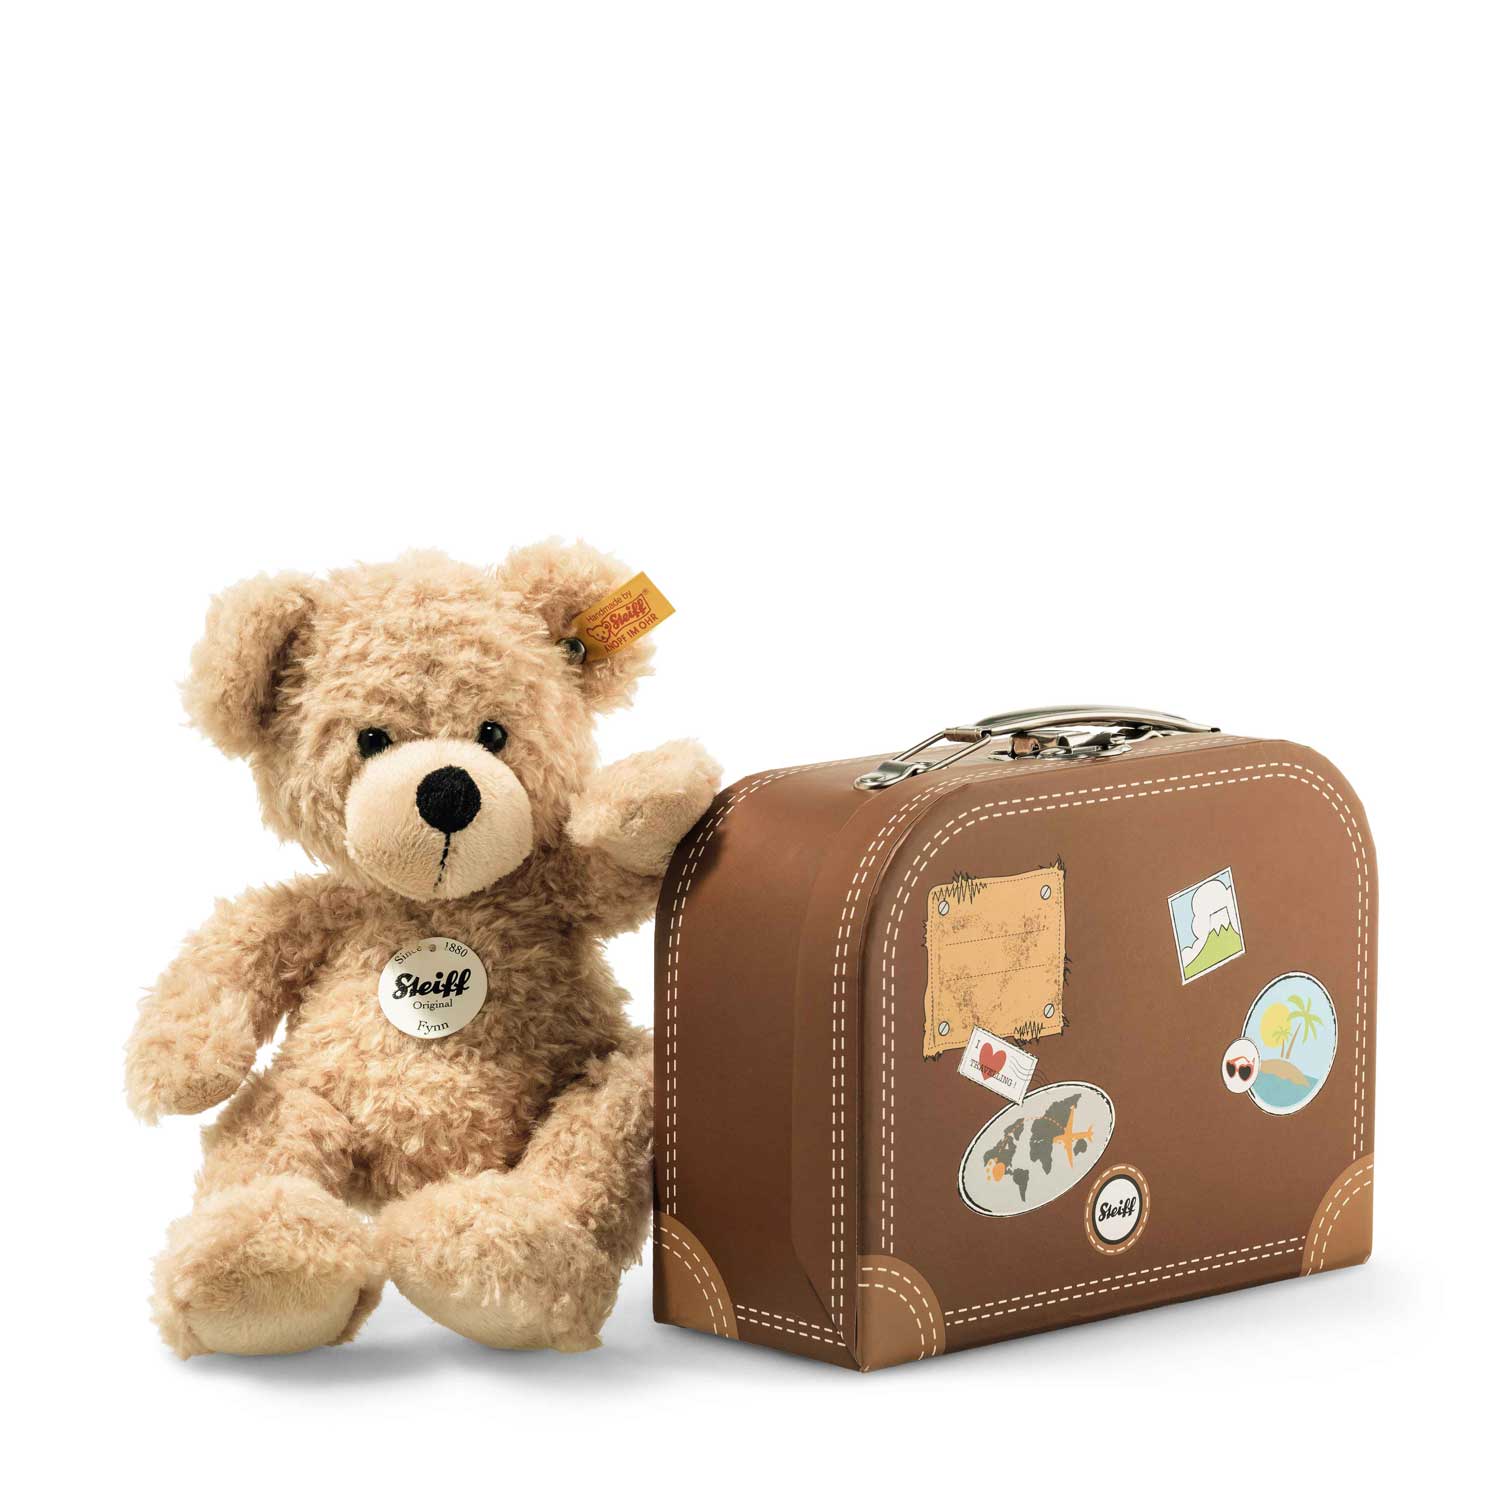 STEIFF Teddybär Fynn beige 23 cm mit Sterne-Koffer NEU 